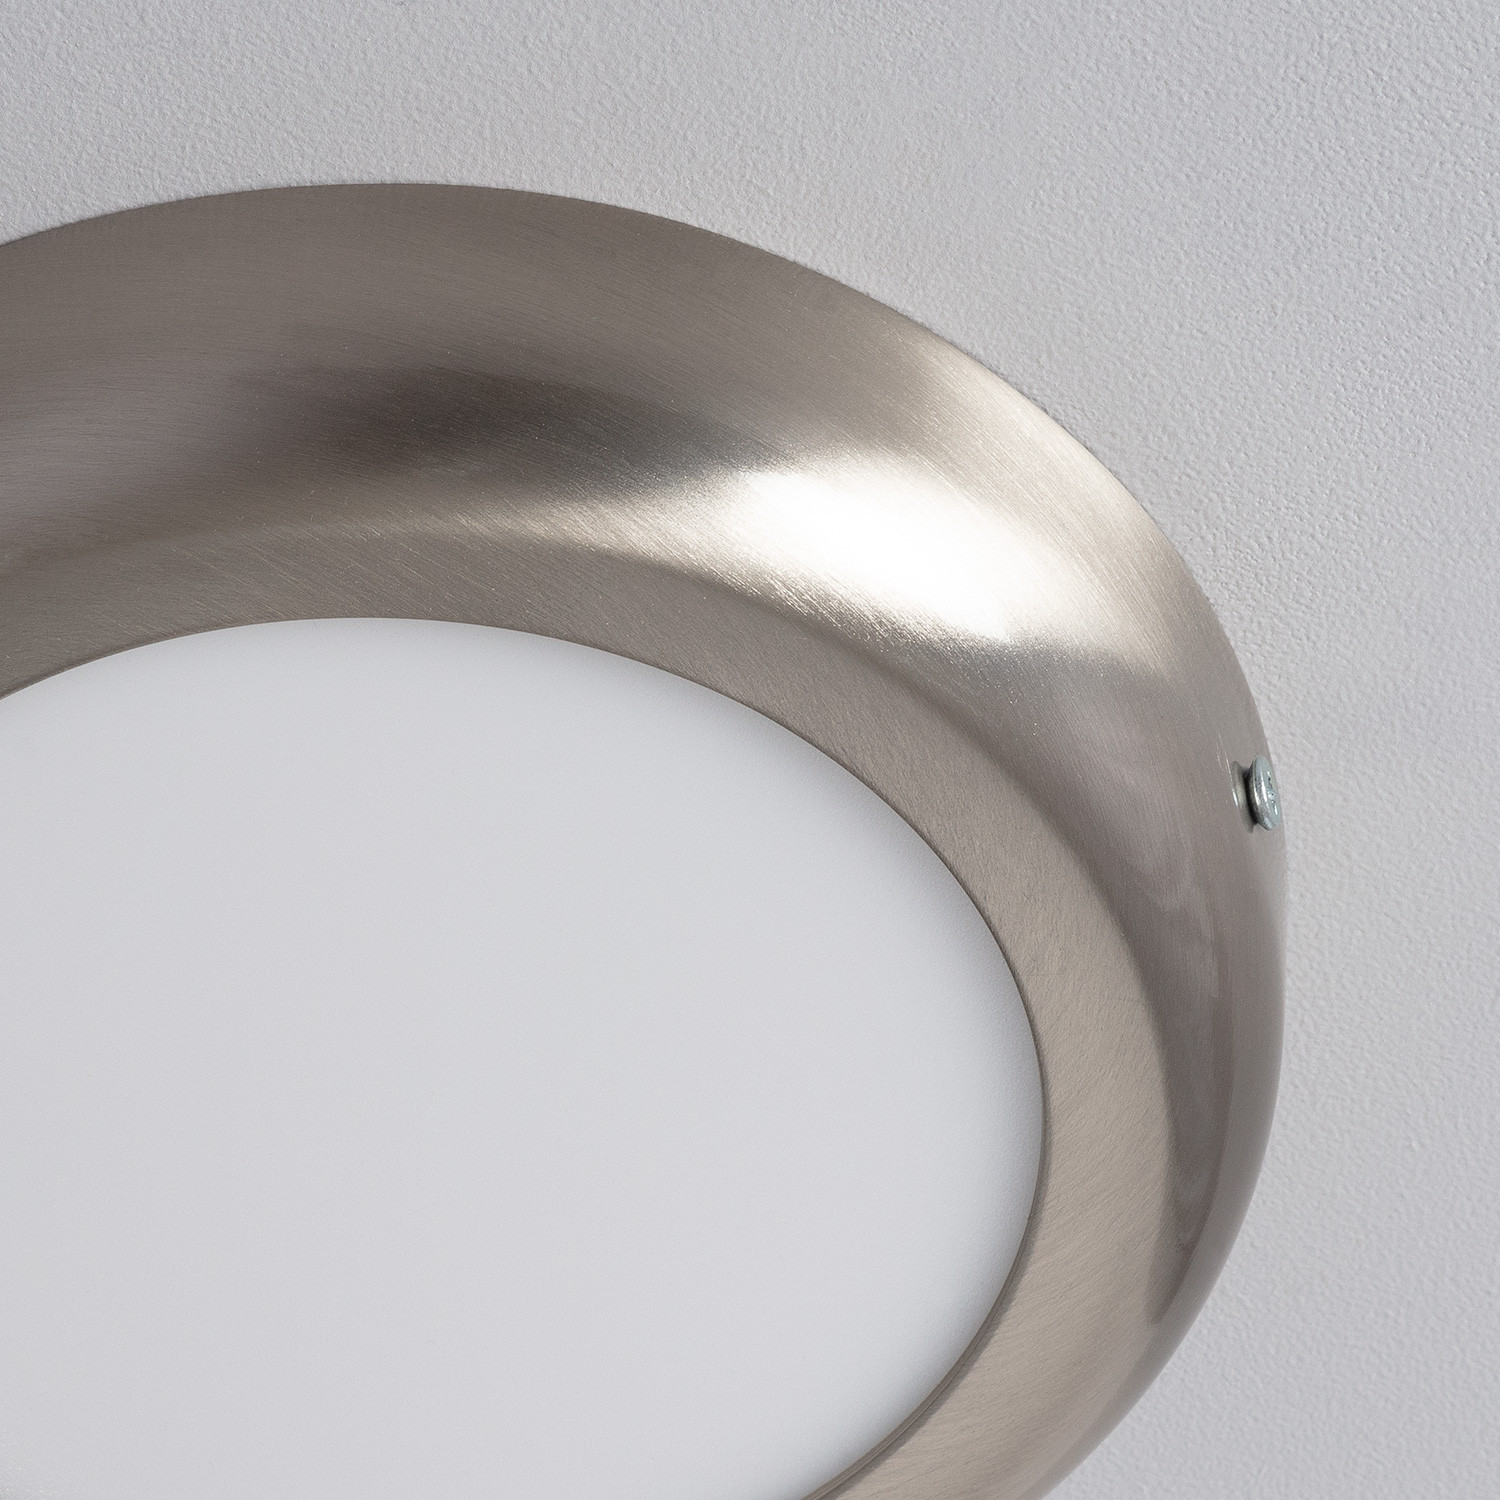 Placa Superfície LED Circular Silver Design 12W